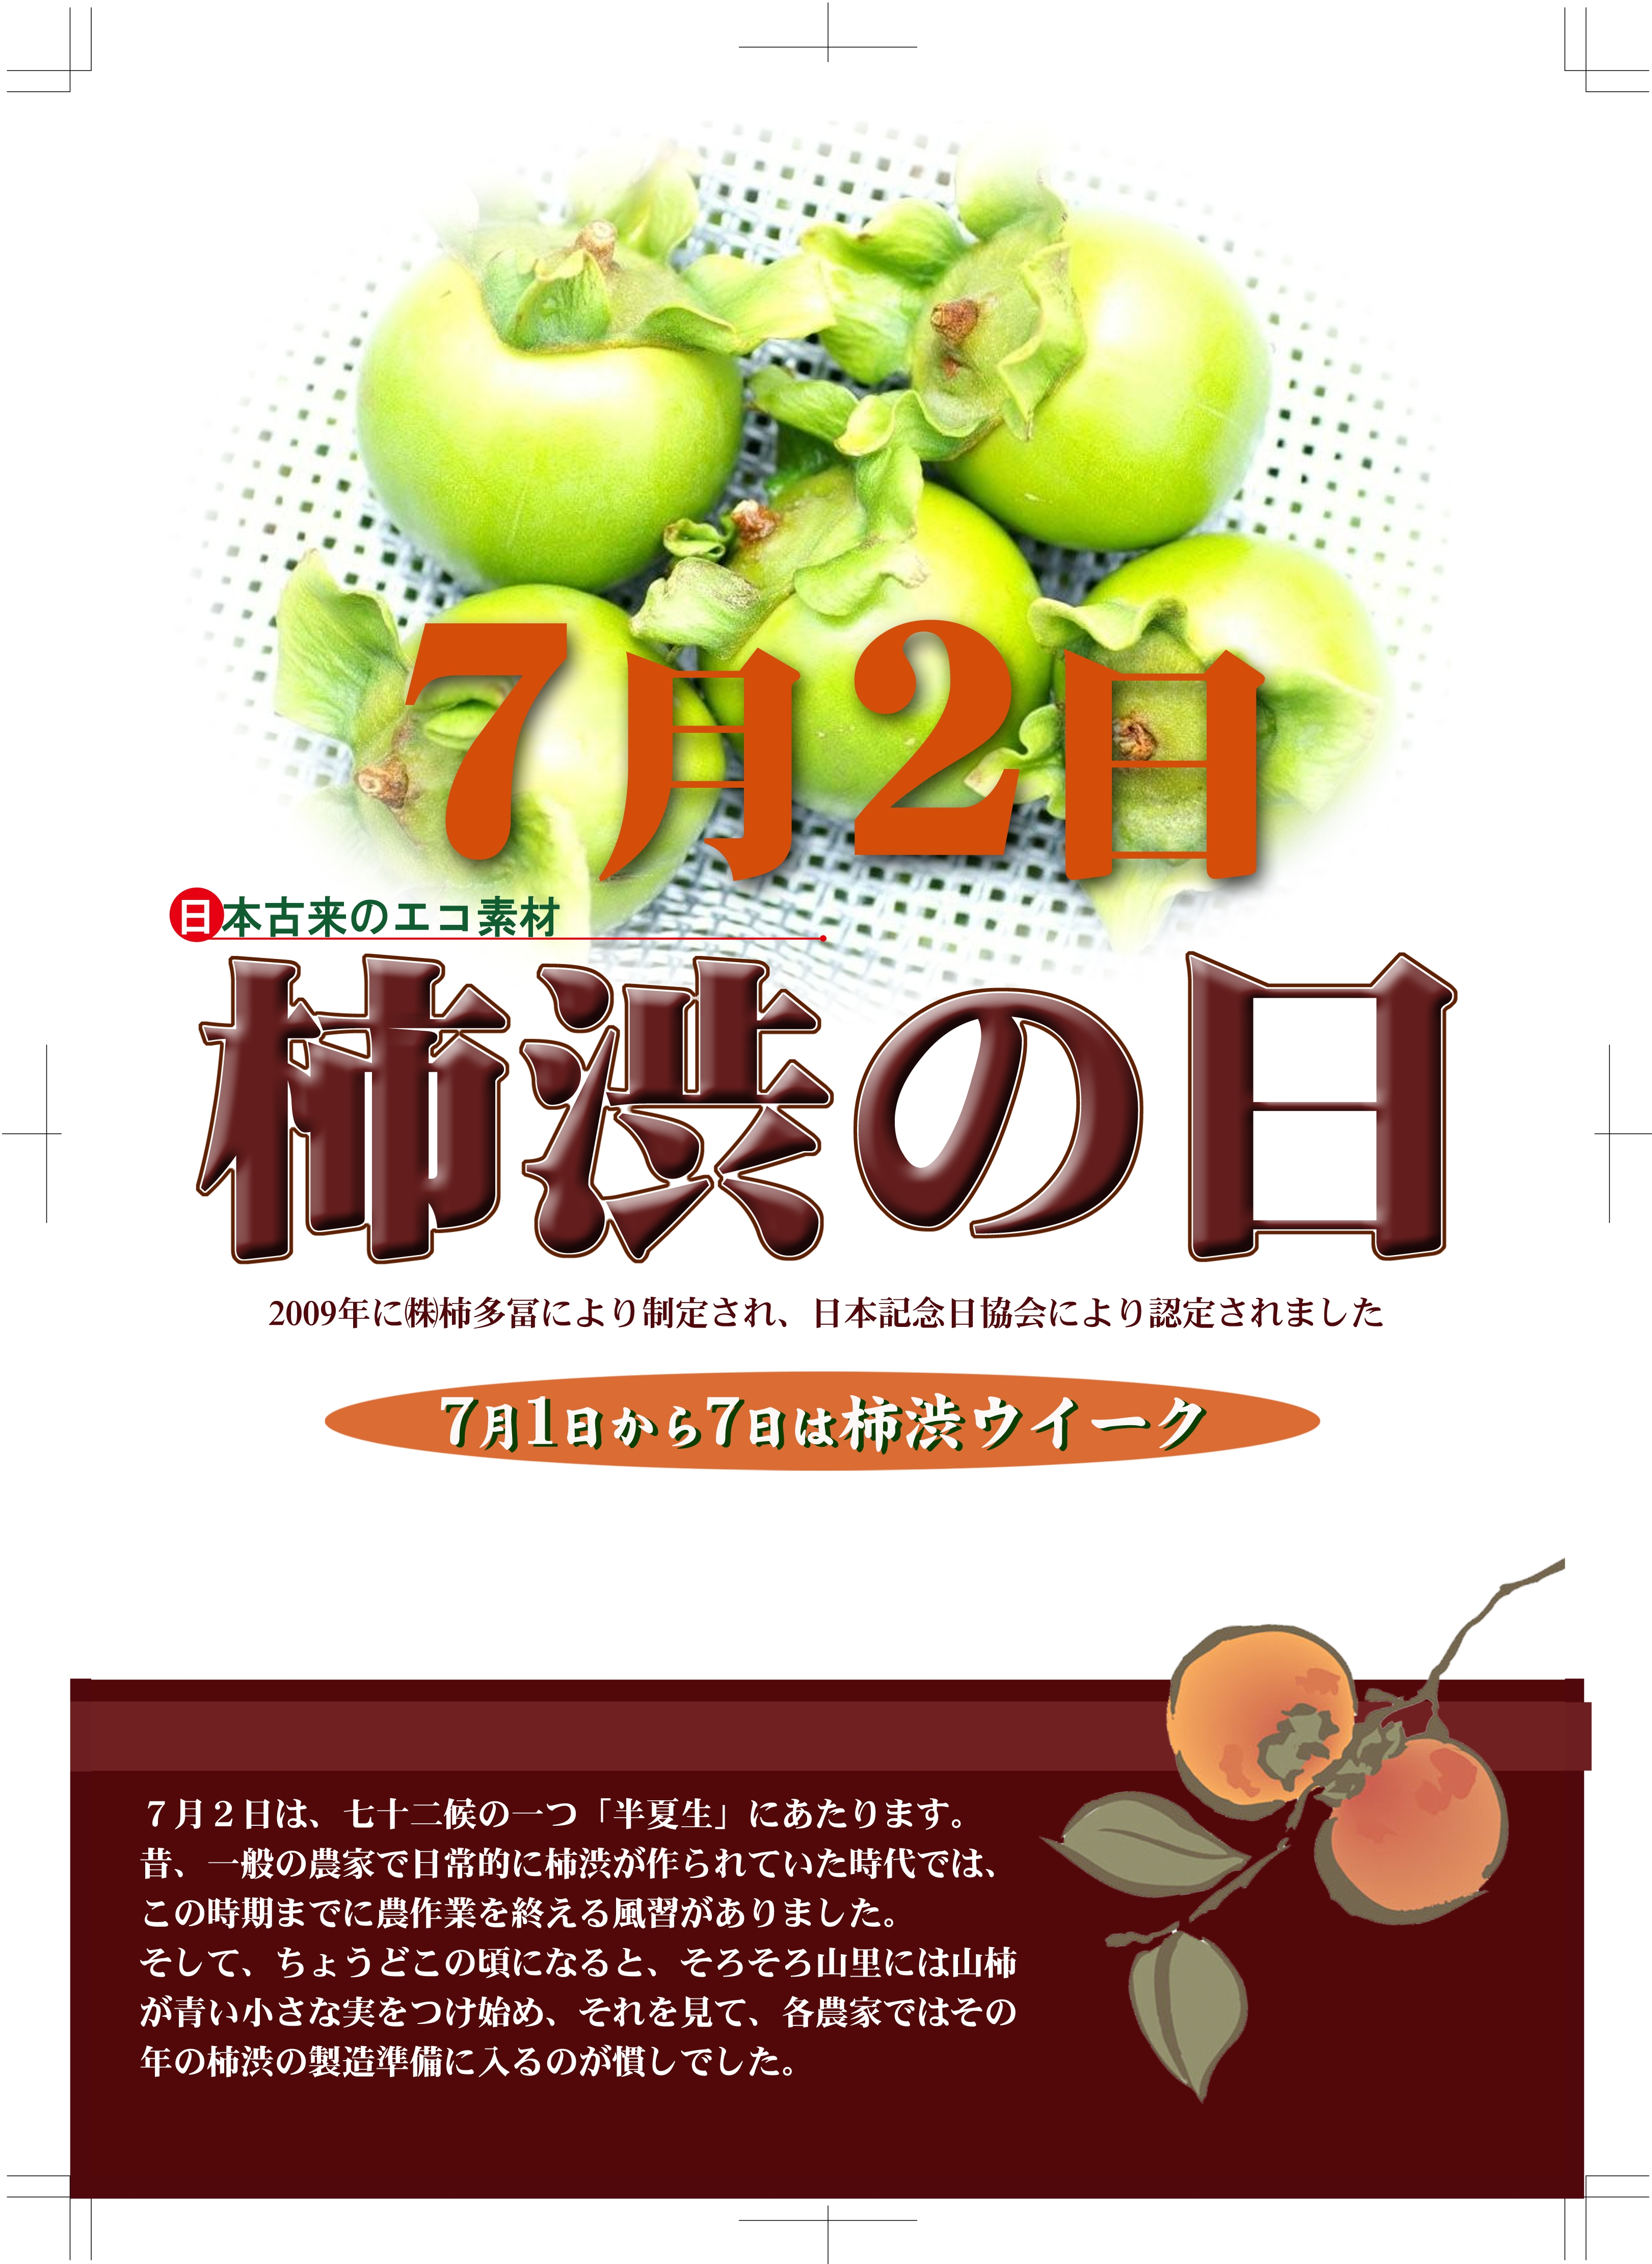 柿渋の日ポスター